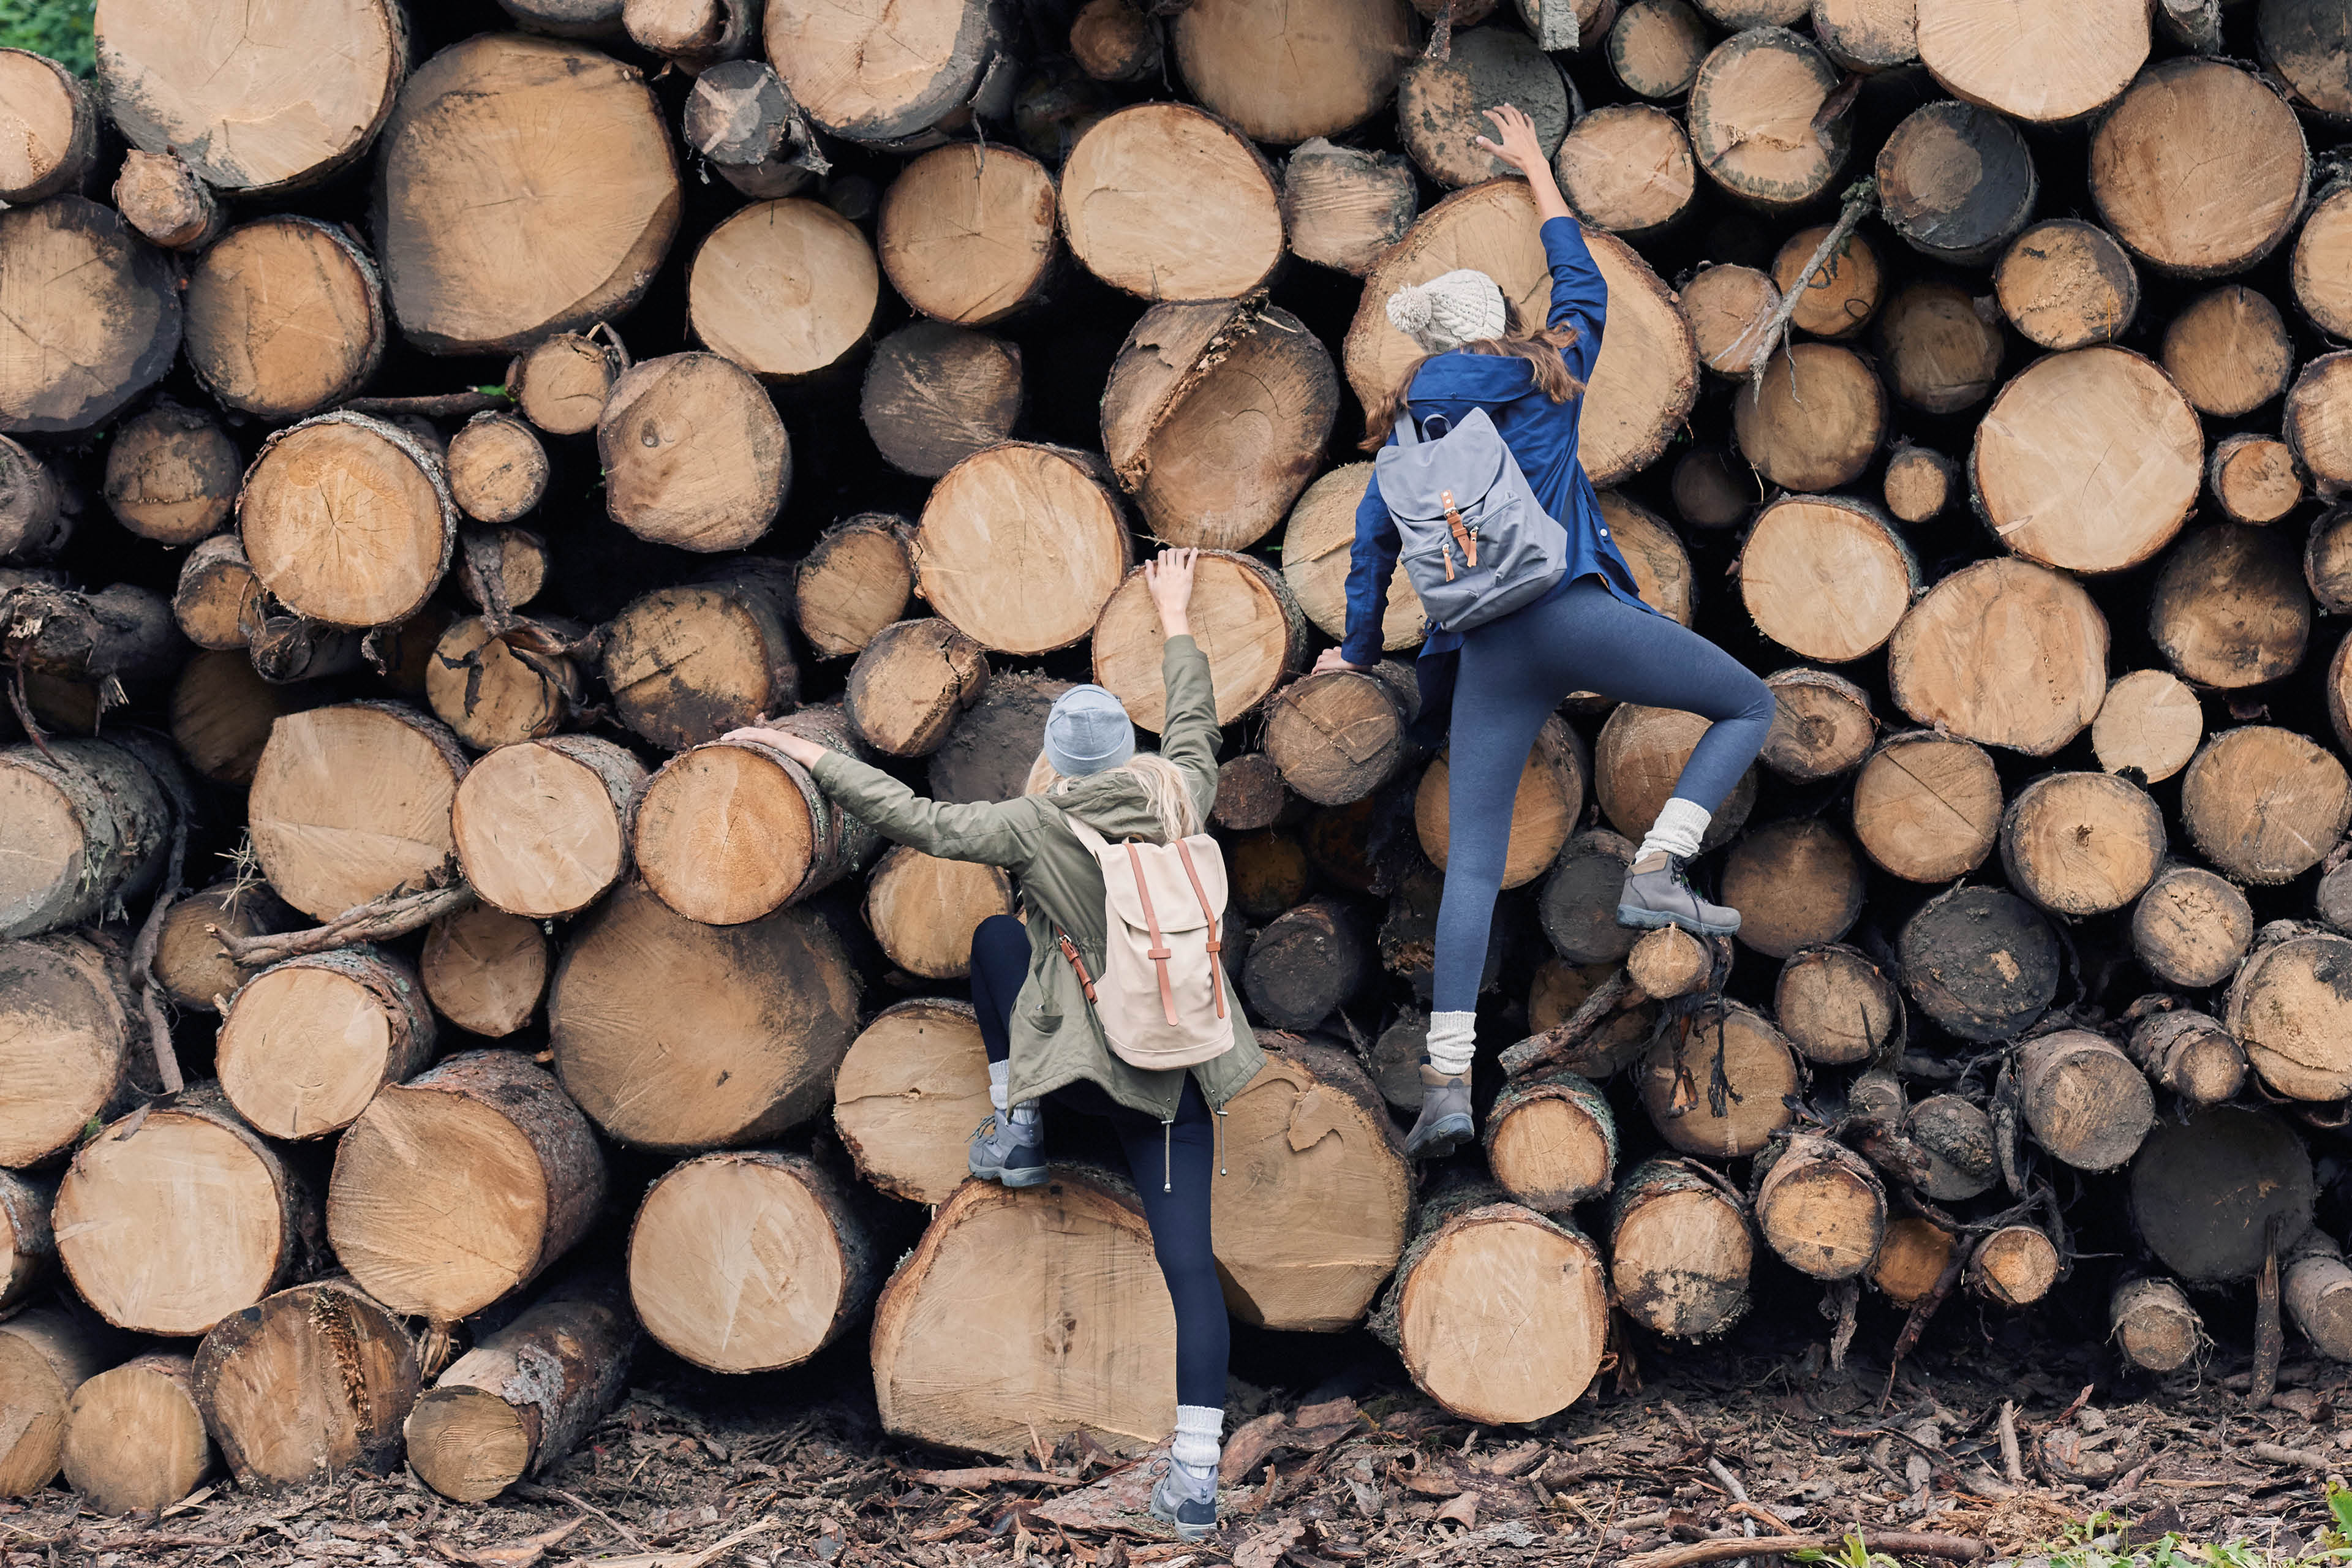 Amigas aventureras se divierten trepando por una pila de troncos en el bosque